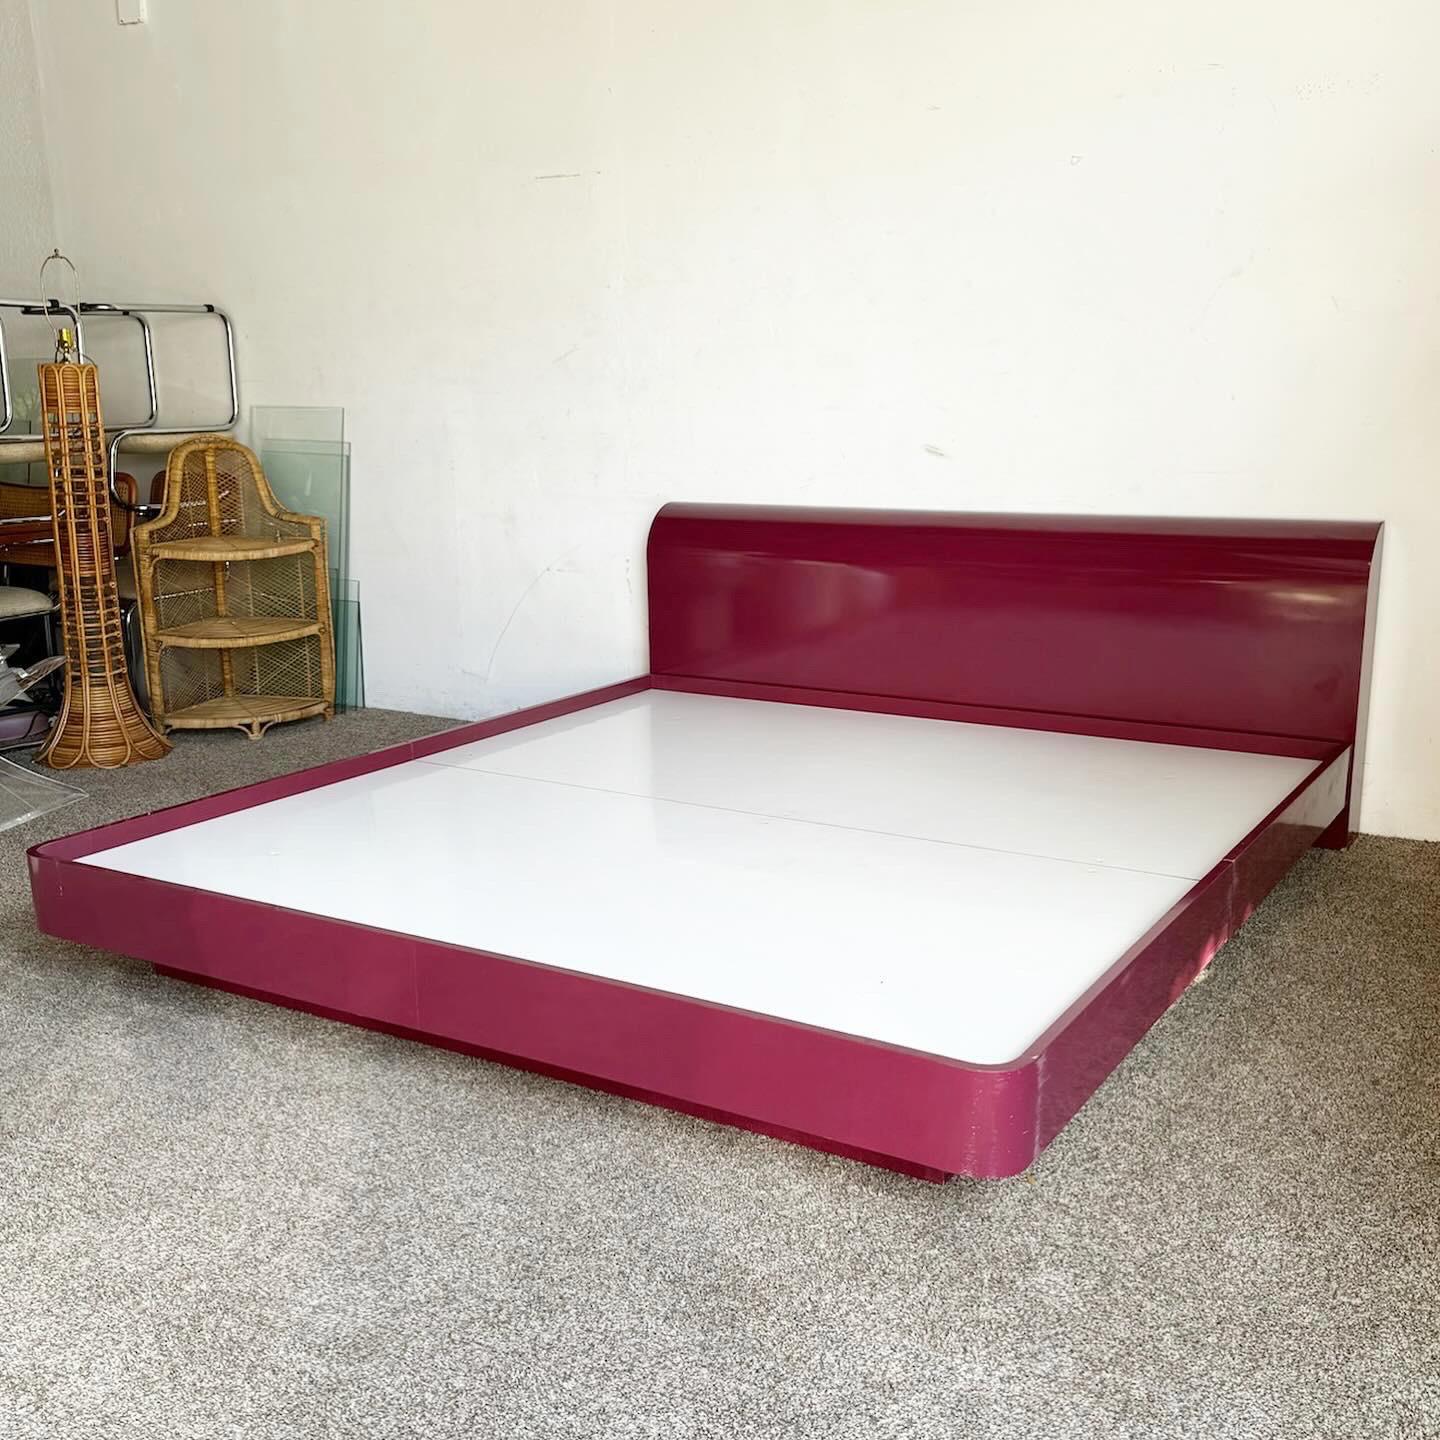 Transformez votre chambre à coucher avec l'ensemble de lit King Postmodern Maroon Lacquer. Enveloppé d'une laque violette vibrante, cet ensemble lit et tête de lit incarne l'esthétique audacieuse et ludique de l'époque. Ses lignes épurées et sa